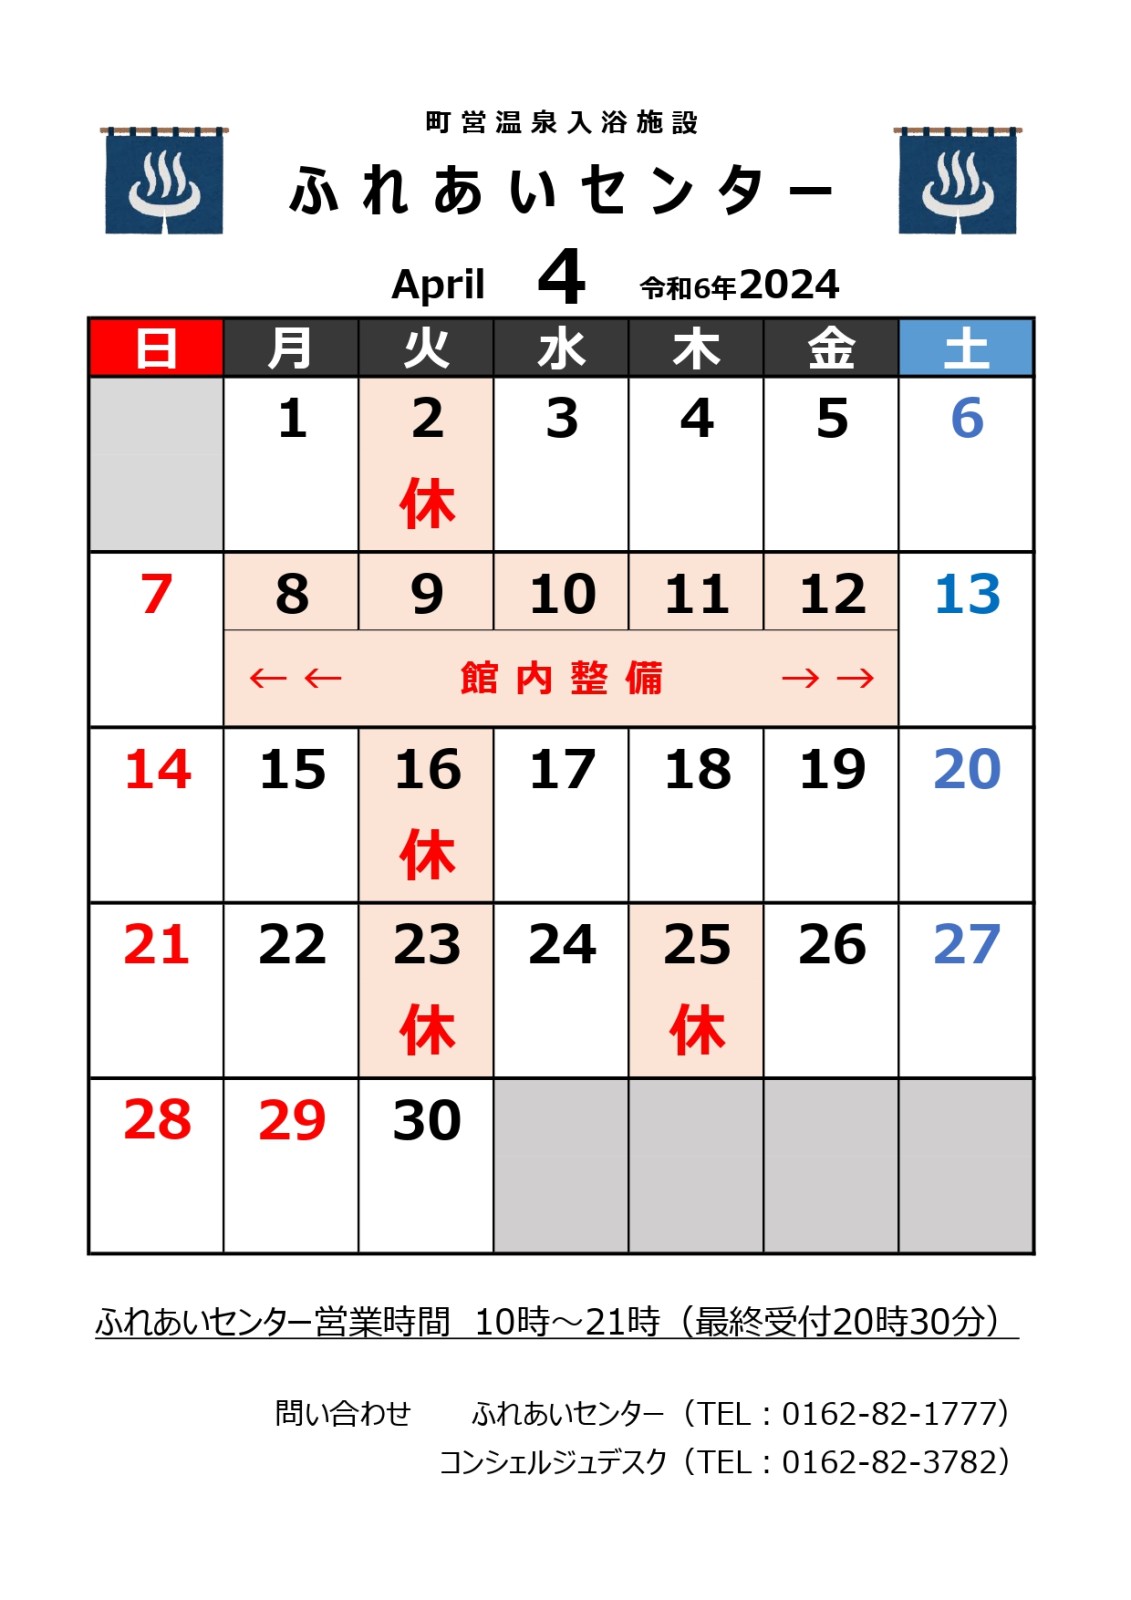 【ふれあいセンター】4月の営業について